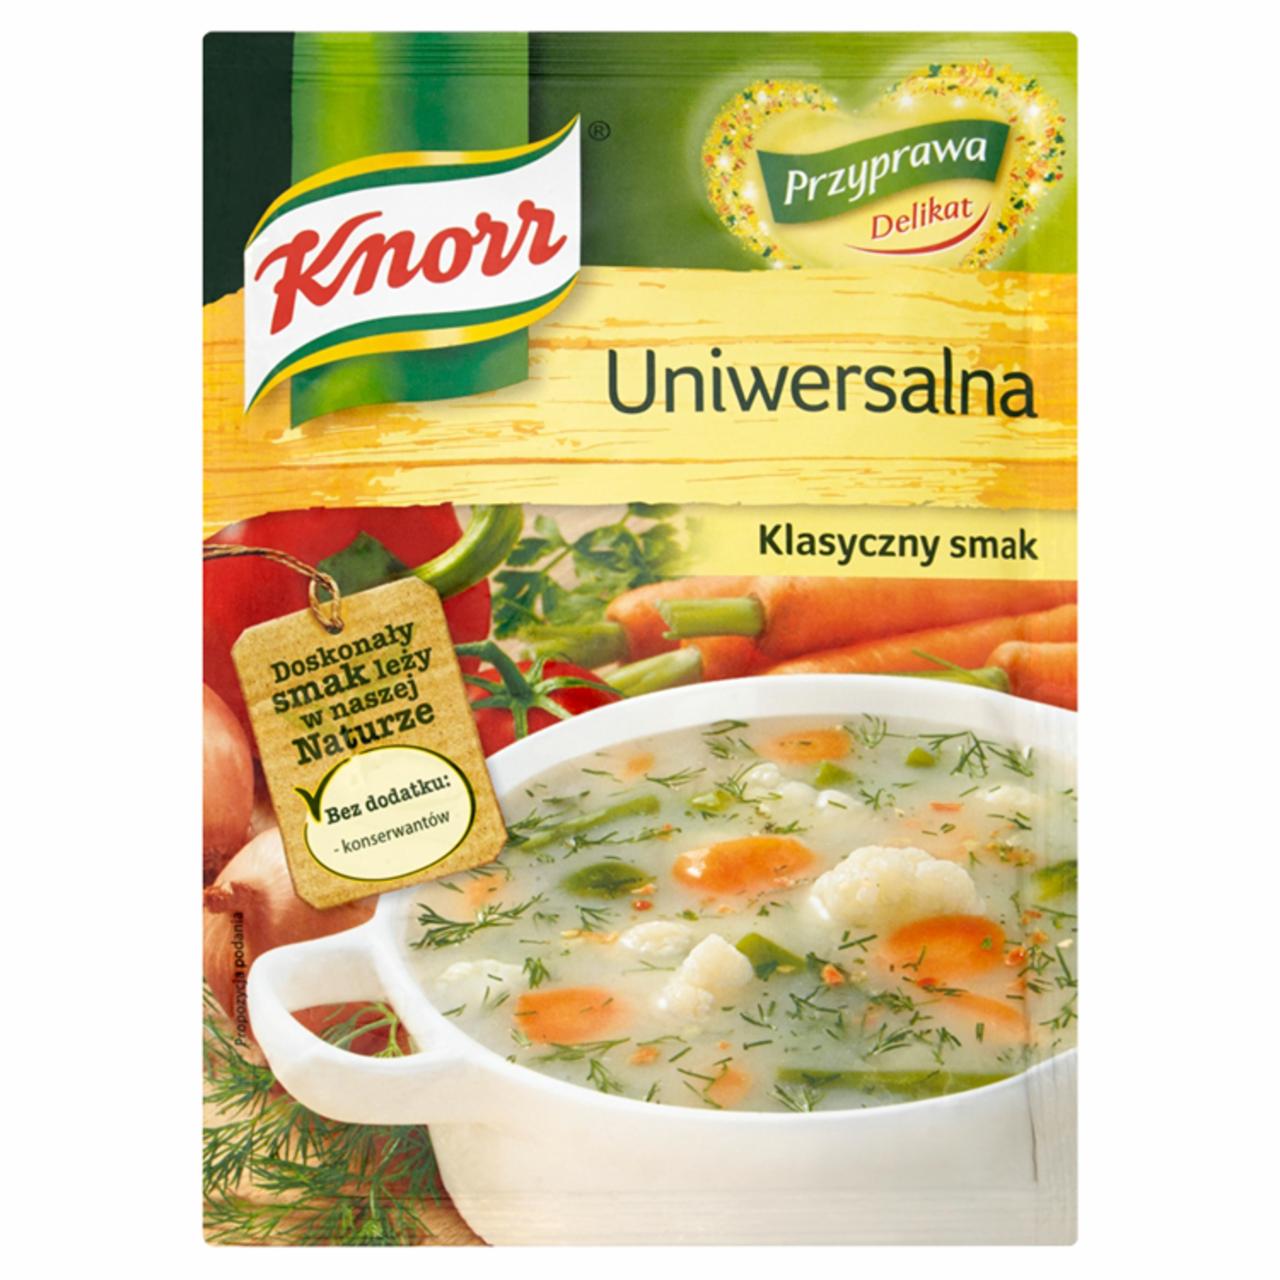 Zdjęcia - Knorr Delikat Przyprawa uniwersalna 75 g